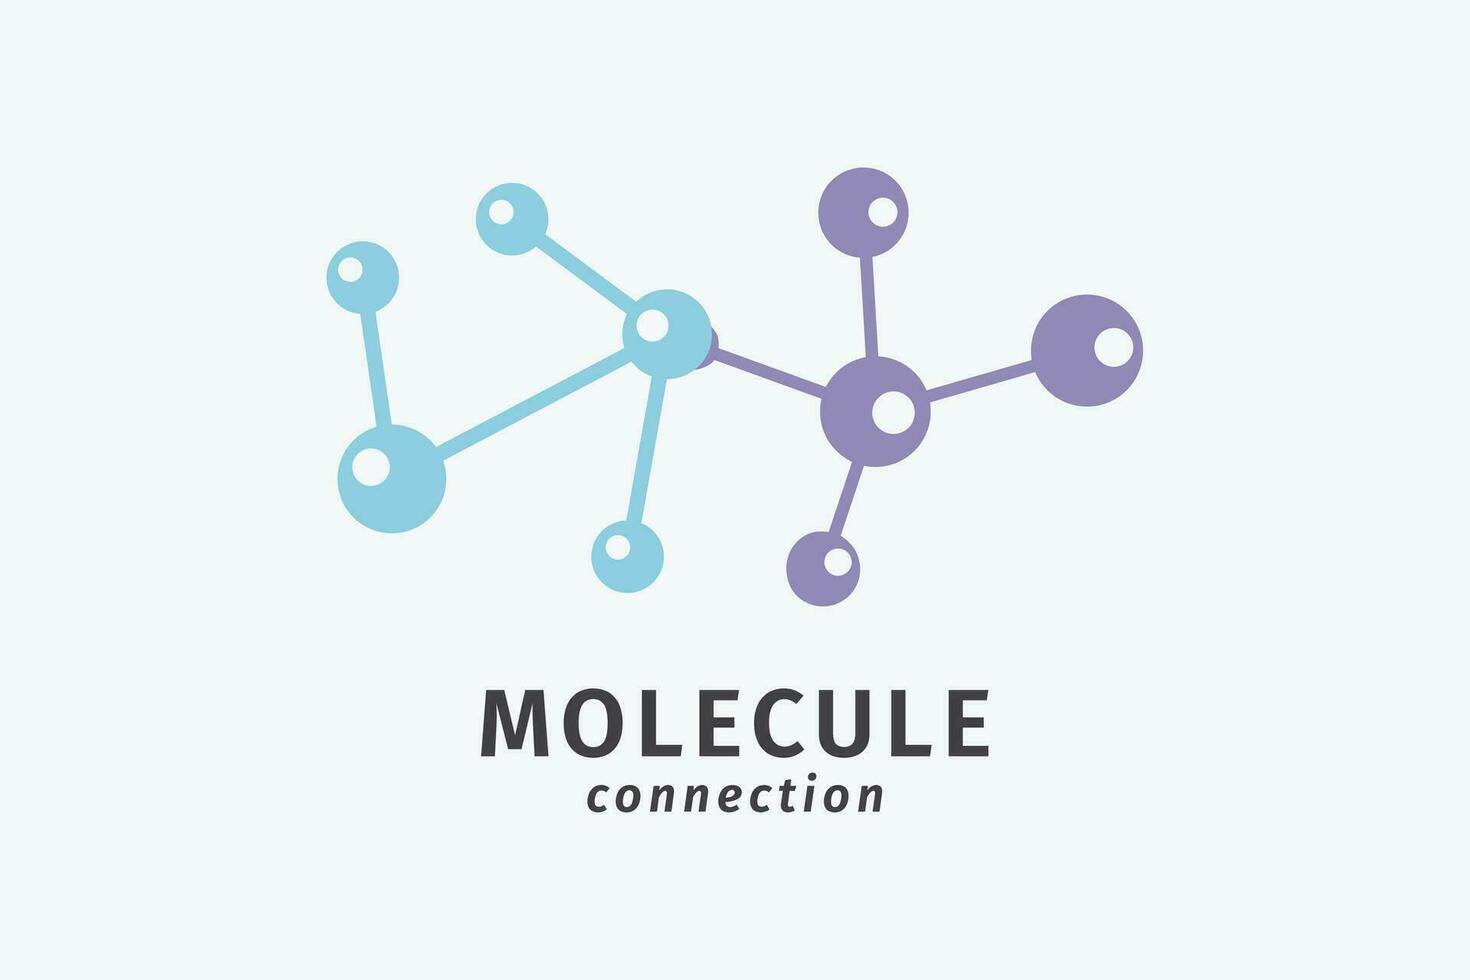 molecuul verbinding wetenschap logo, vector ontwerp illustratie